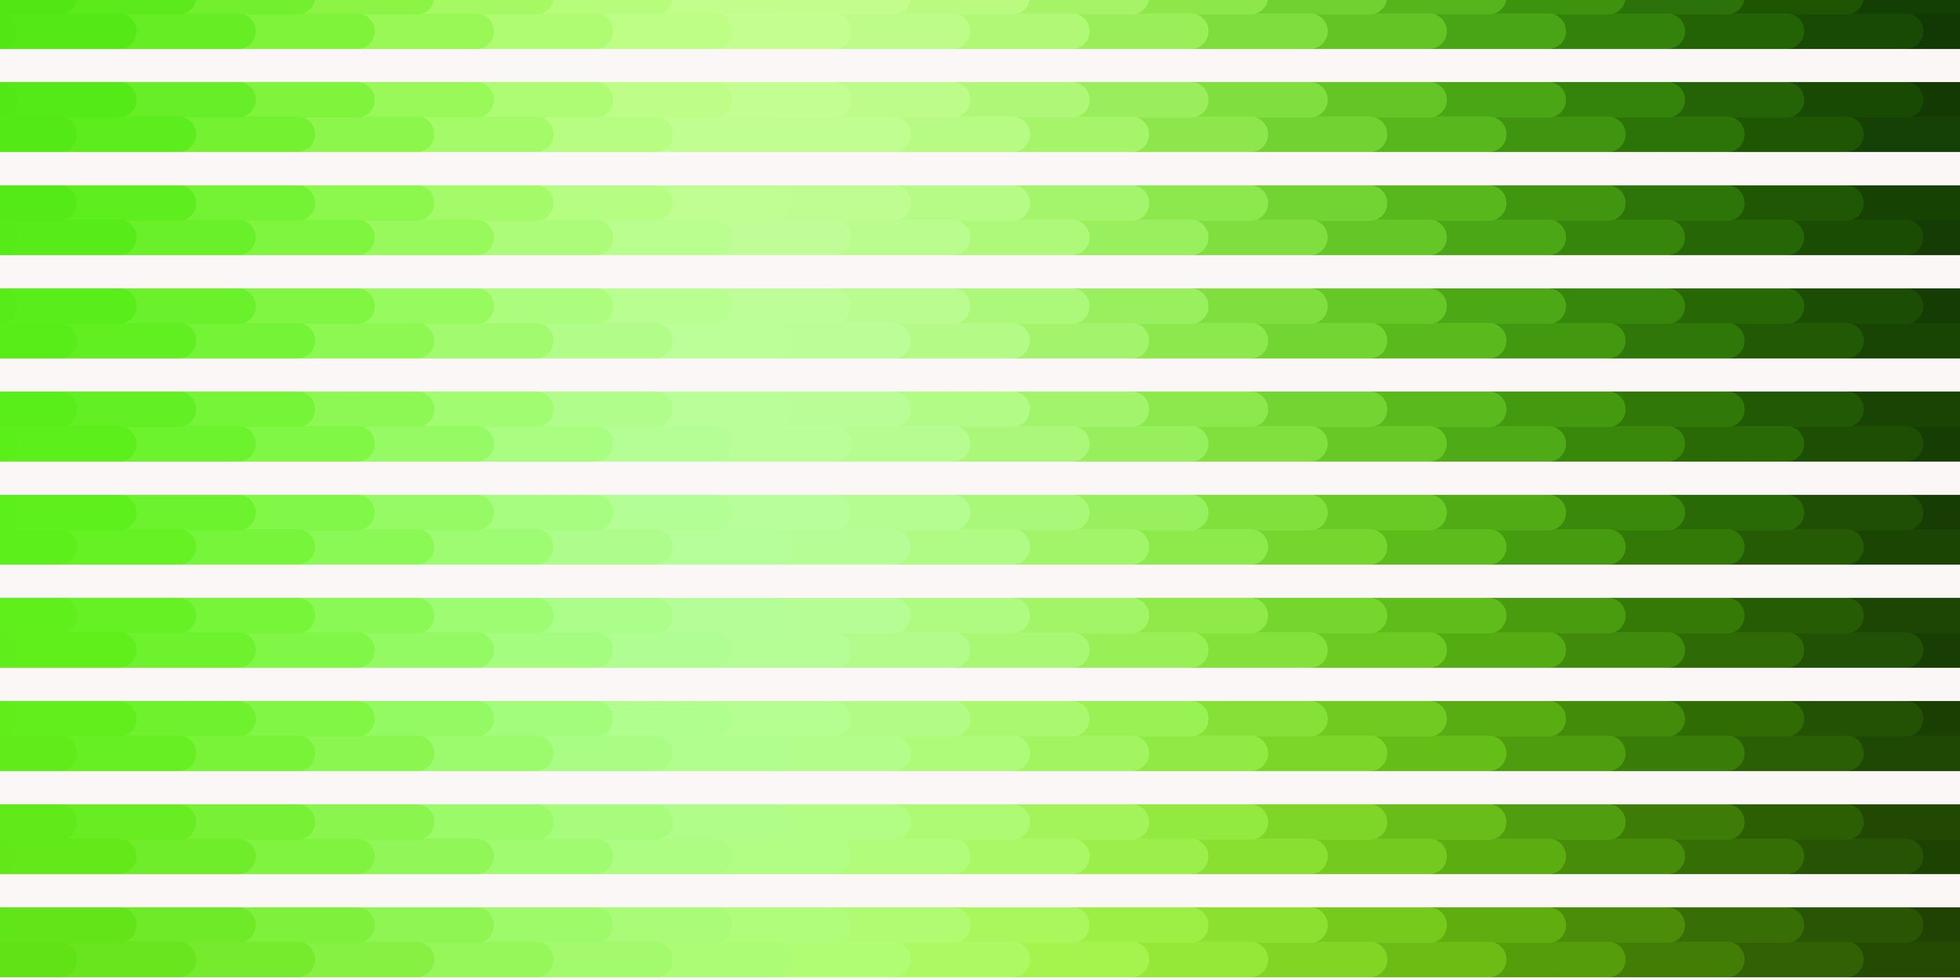 hellgrüner Vektorhintergrund mit Linien vektor